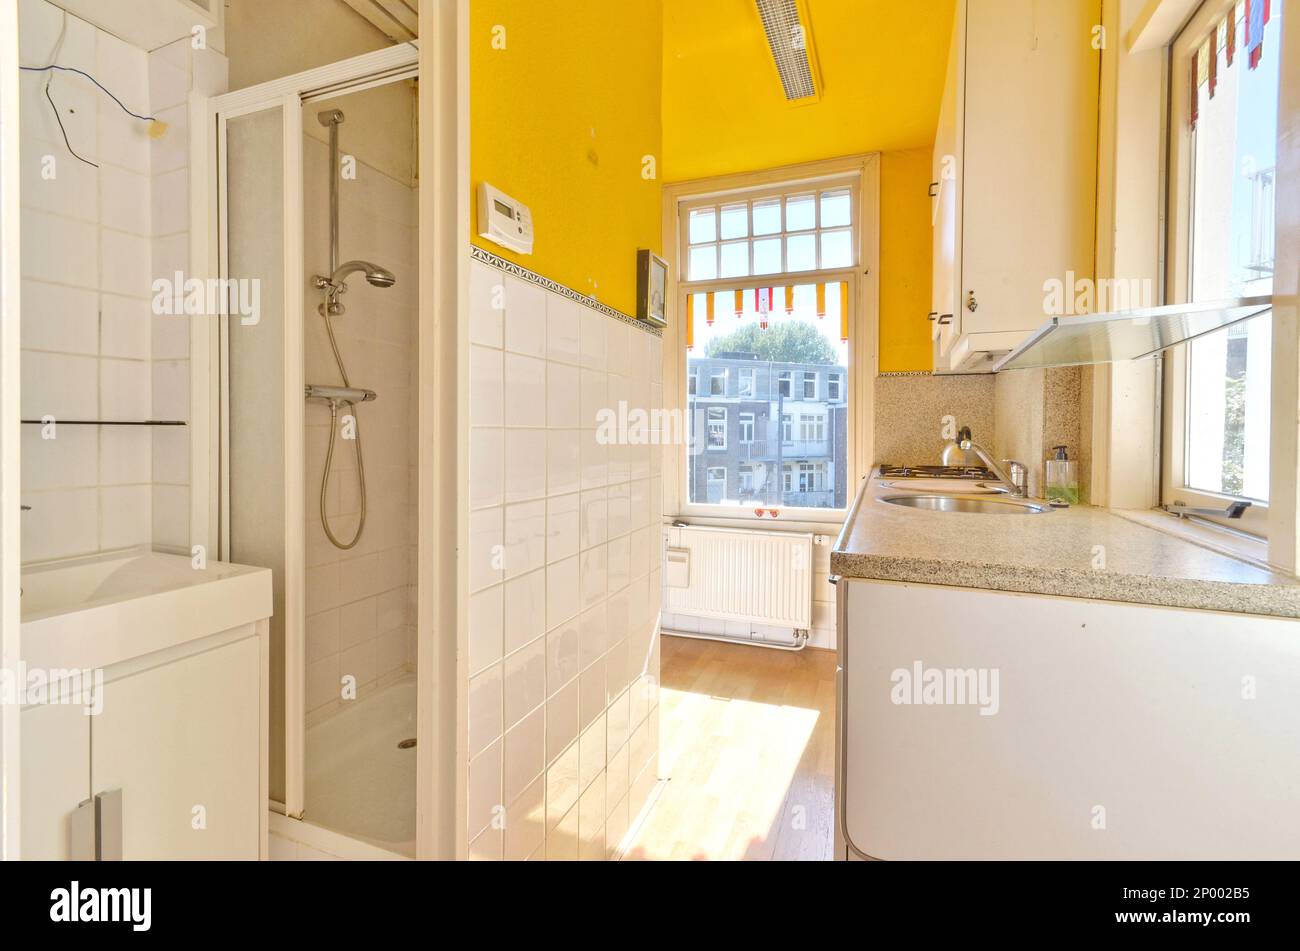 Ein Badezimmer mit gelben Wänden und weißen Fliesen an der Wand, zusammen mit einer begehbaren Duschkabine daneben Stockfoto